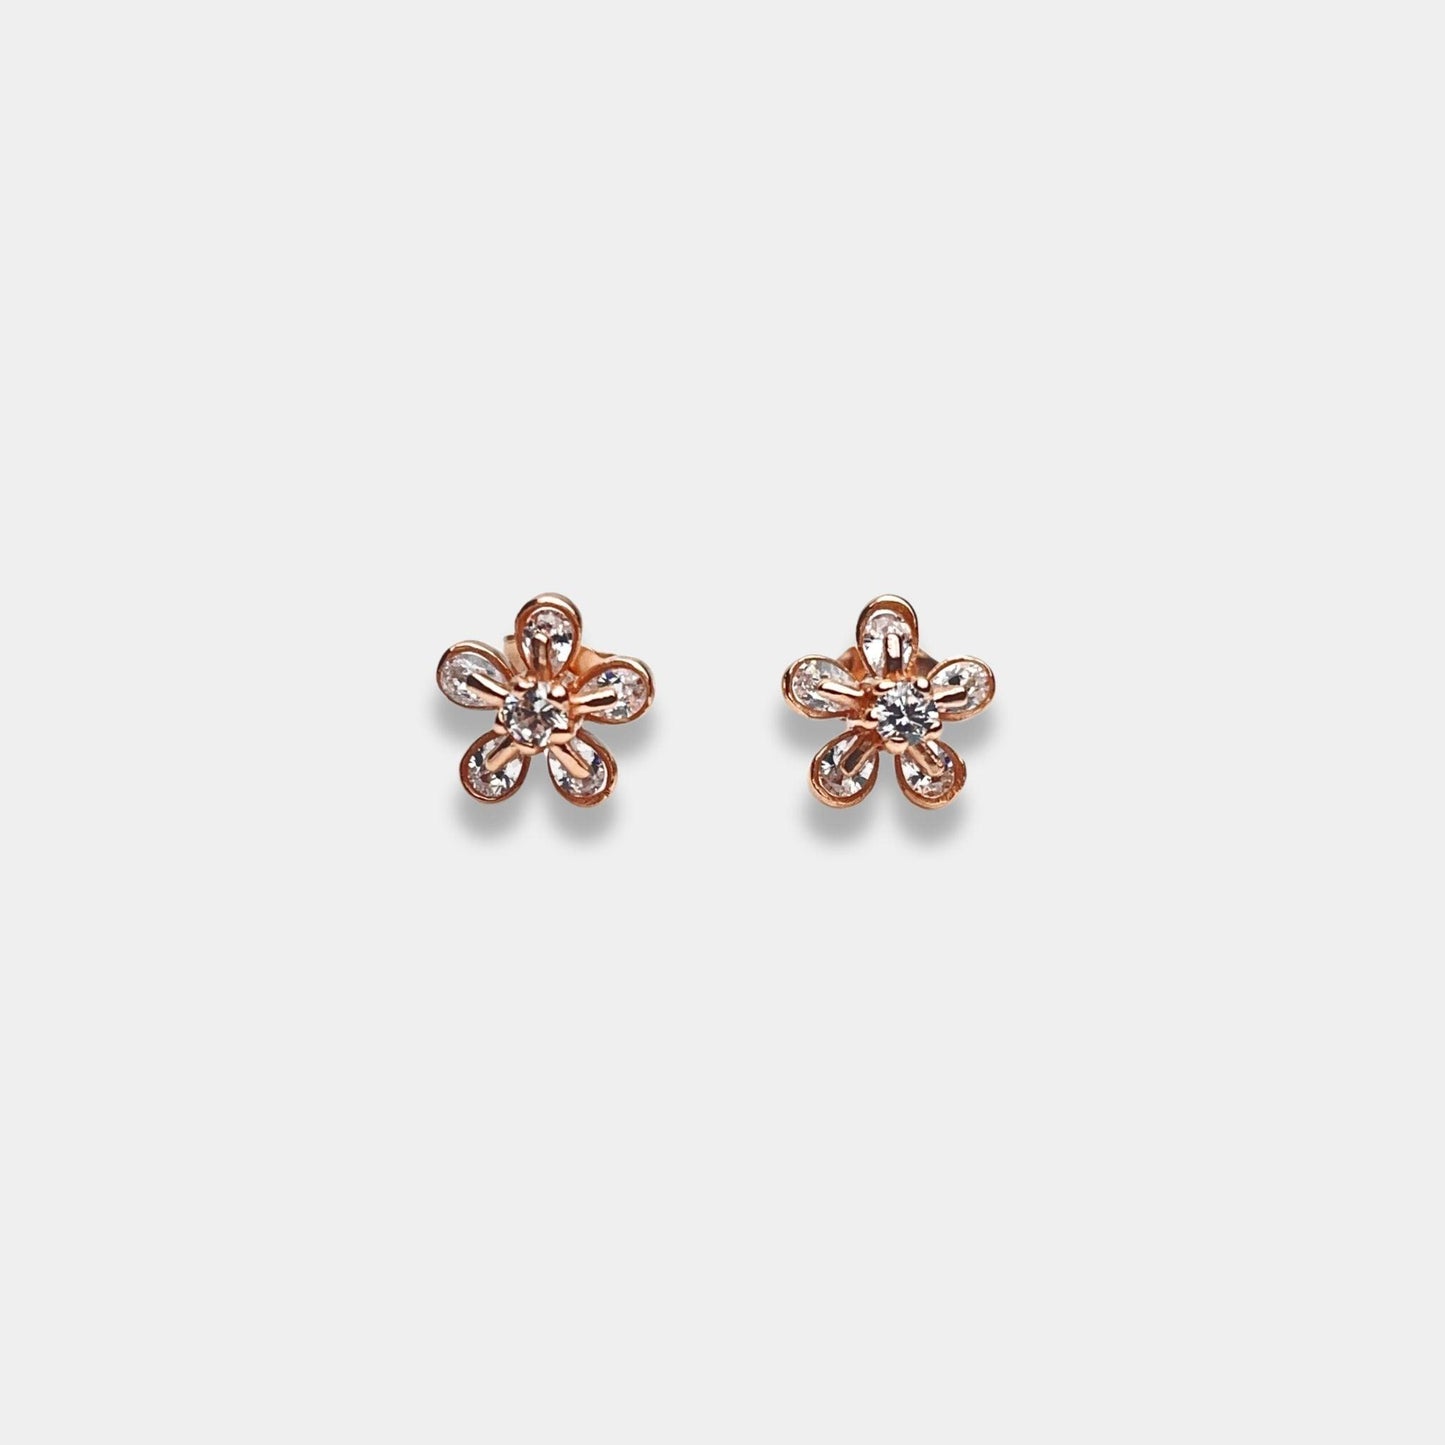 Rose gold flower stud earrings on sterling silver base